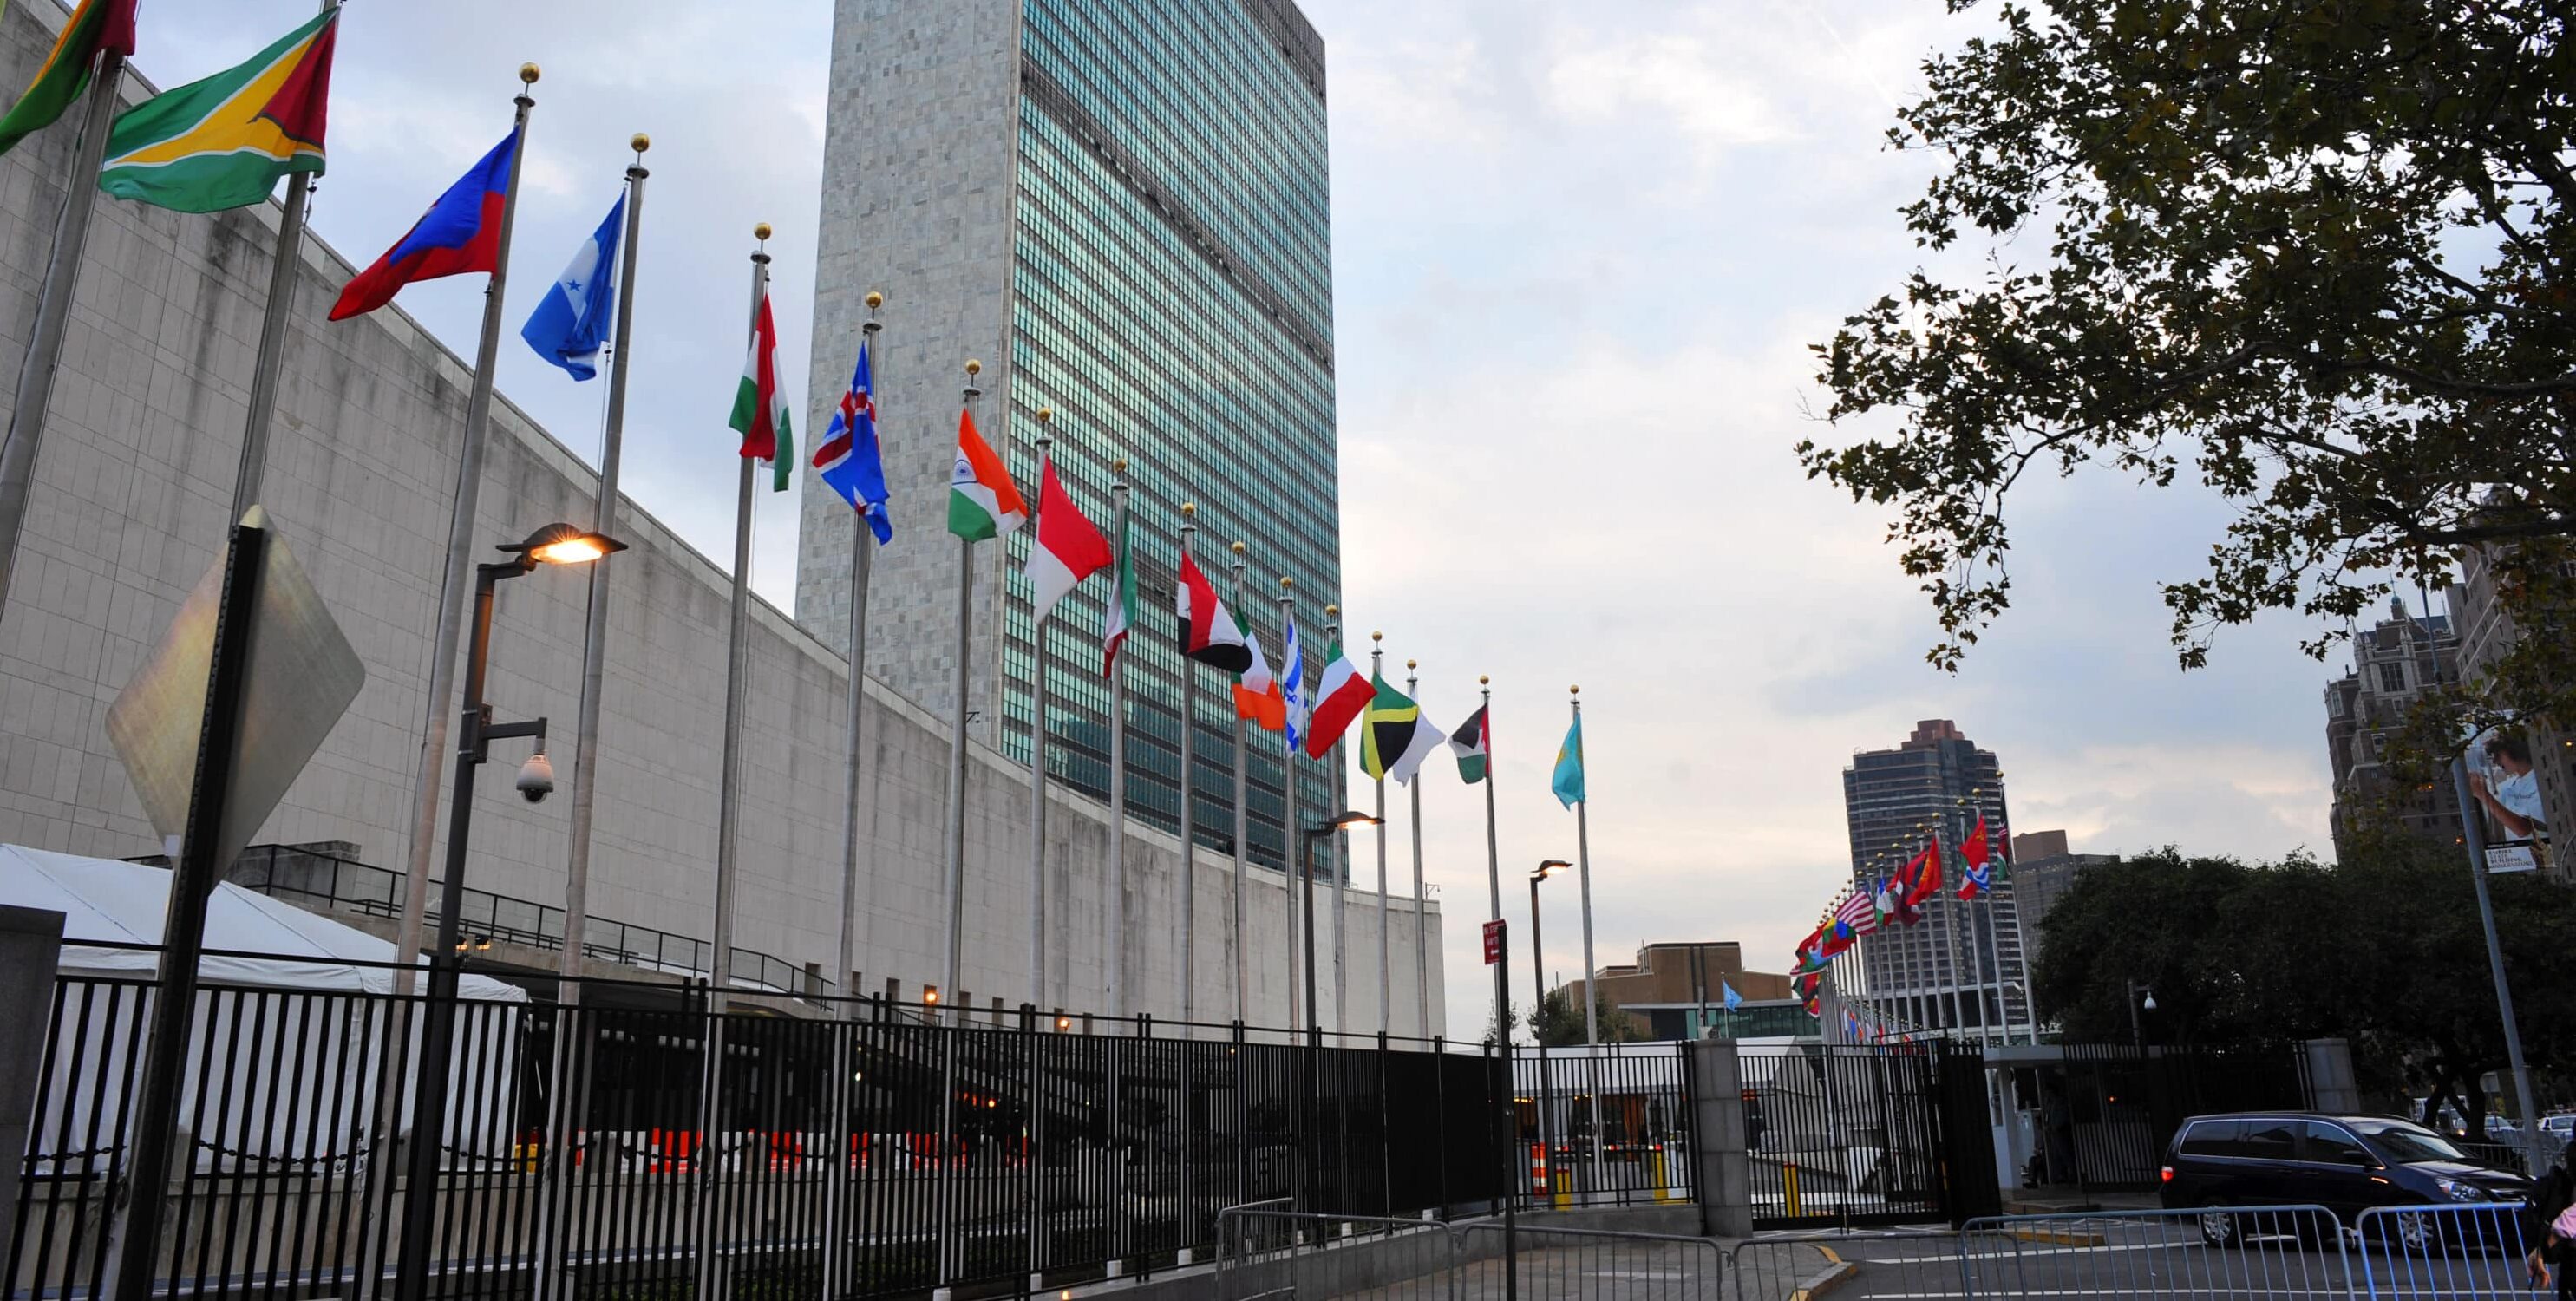 Esecuzione con l’azoto, la condanna dell’Onu contro gli Usa: “Potrebbe essere considerata tortura”